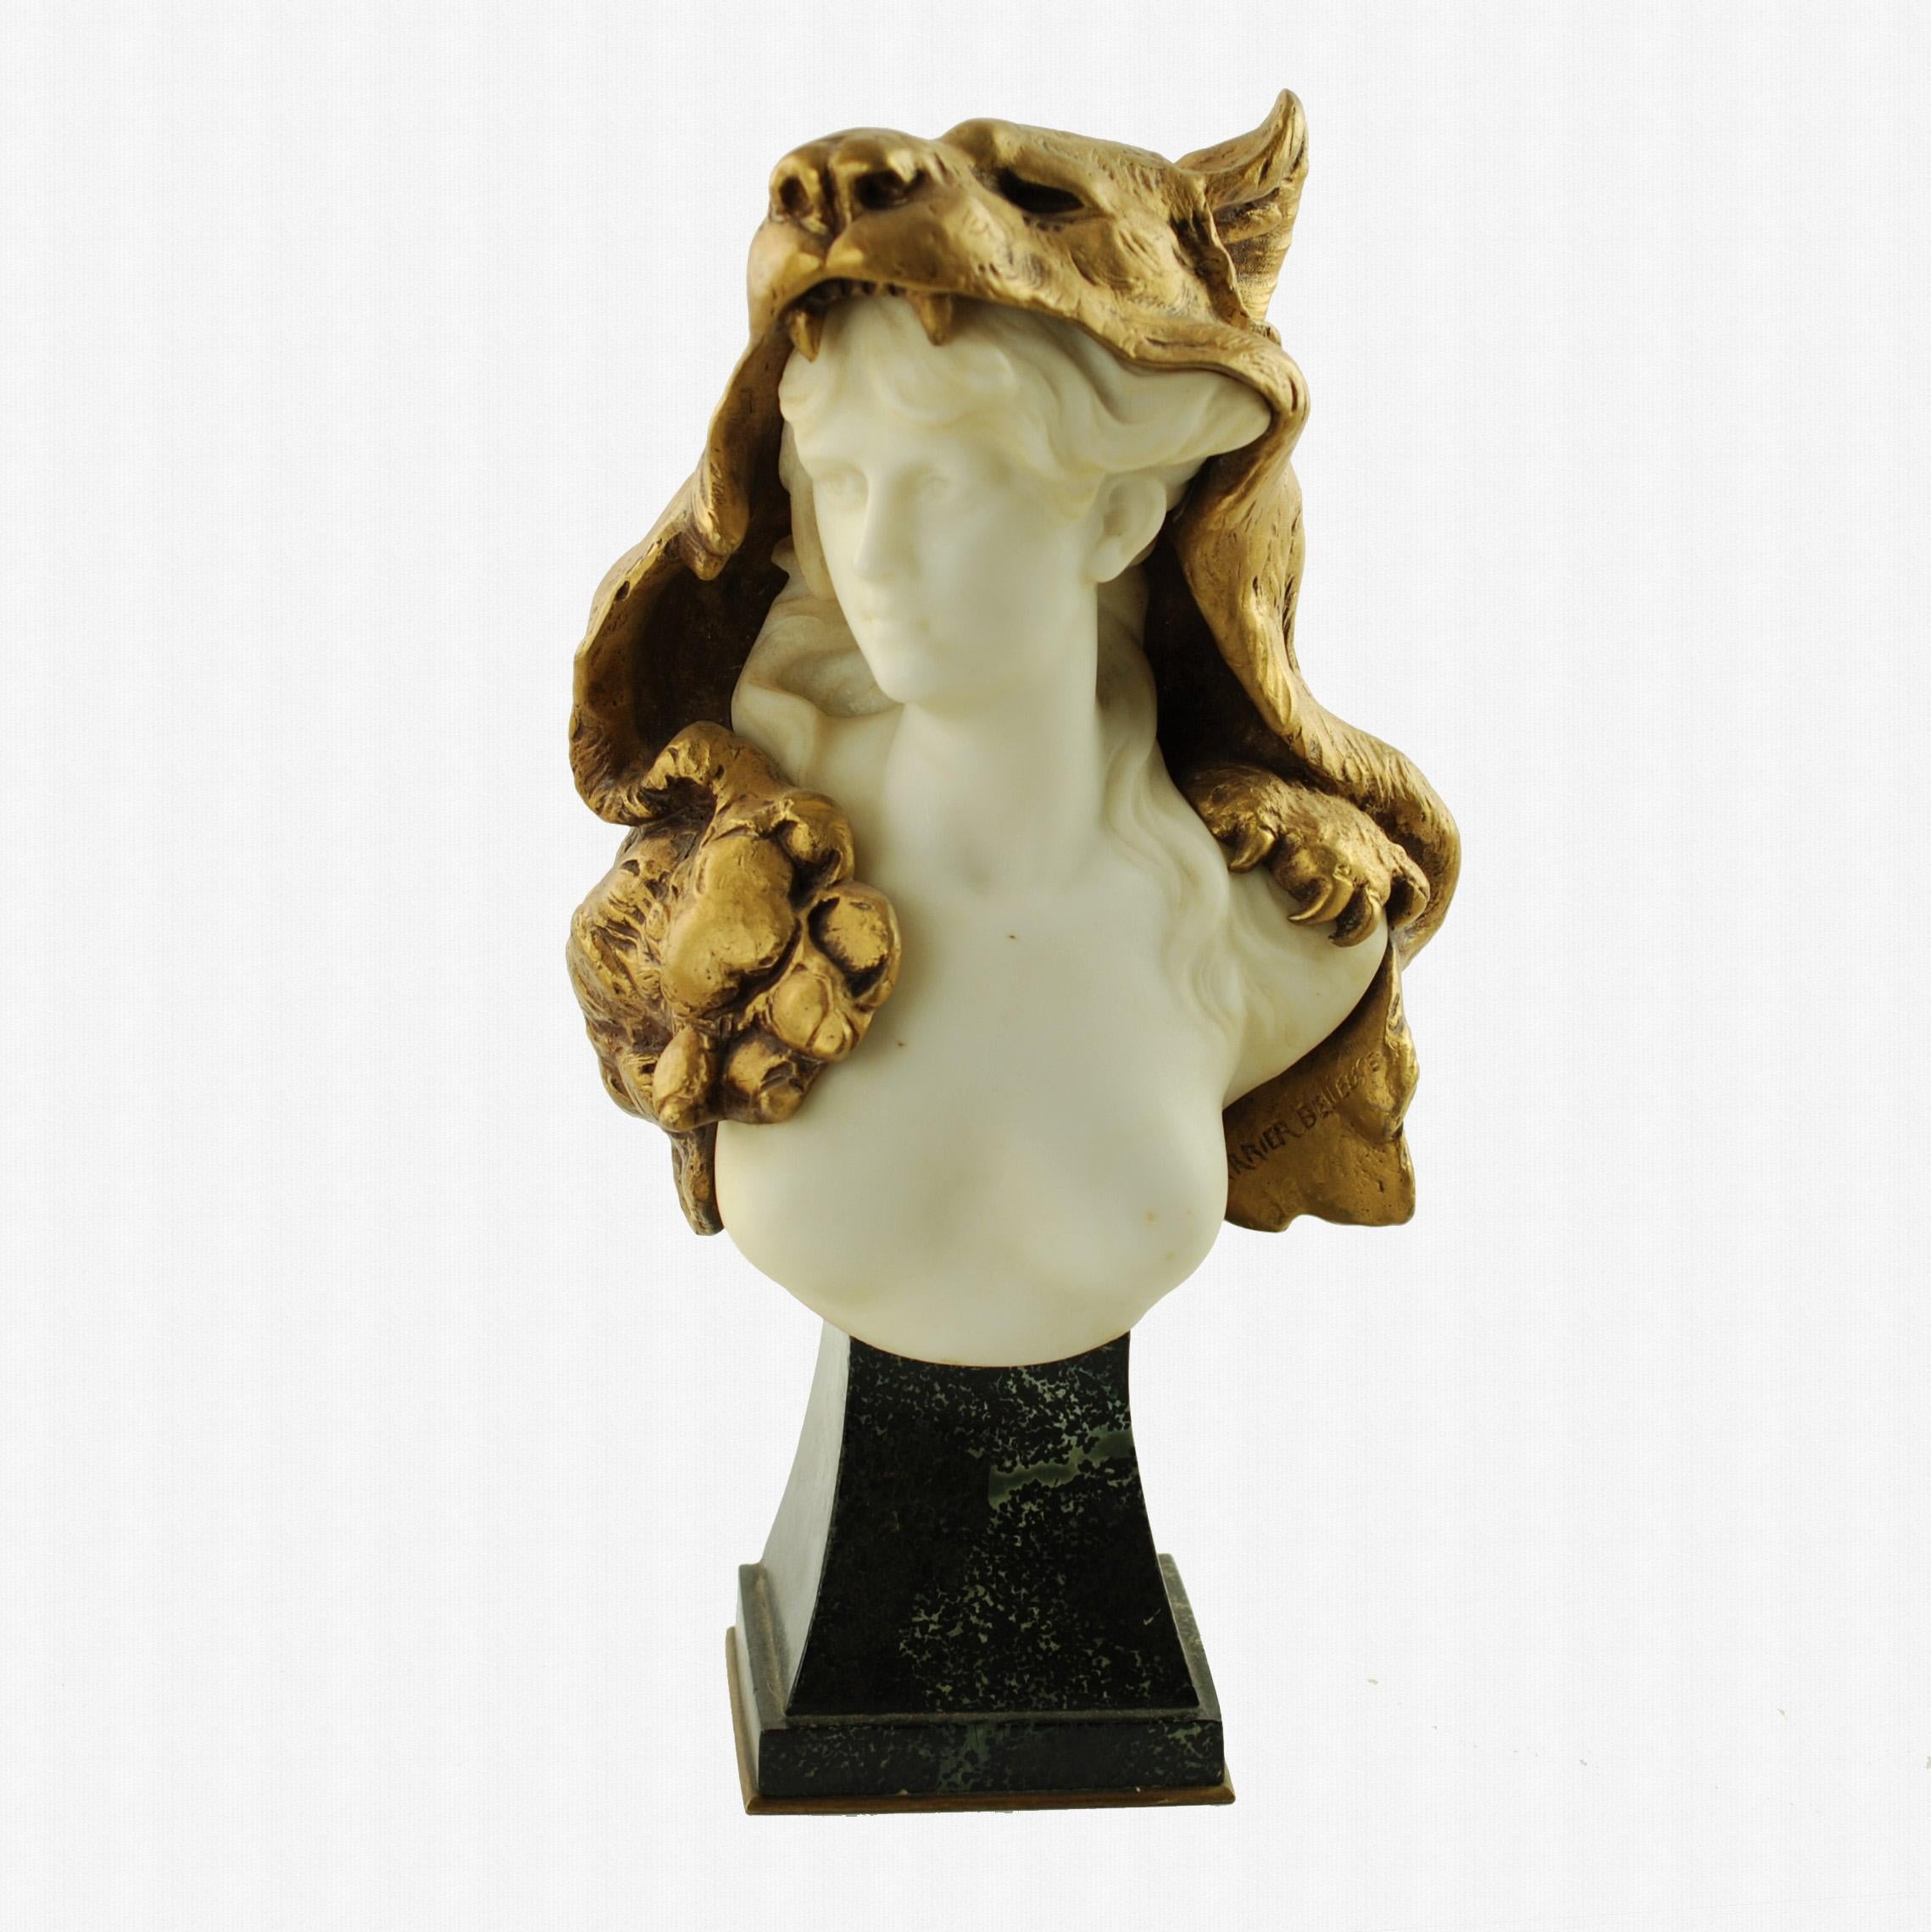 Ce buste de la fin du XIXe siècle a été exécuté par le peintre et sculpteur français Louis-Robert Carrier-Belleuse (1848-1913), fils et élève du célèbre sculpteur Albert-Ernest Carrier-Belleuse. Outre les études de son père, Louis-Robert se forme à